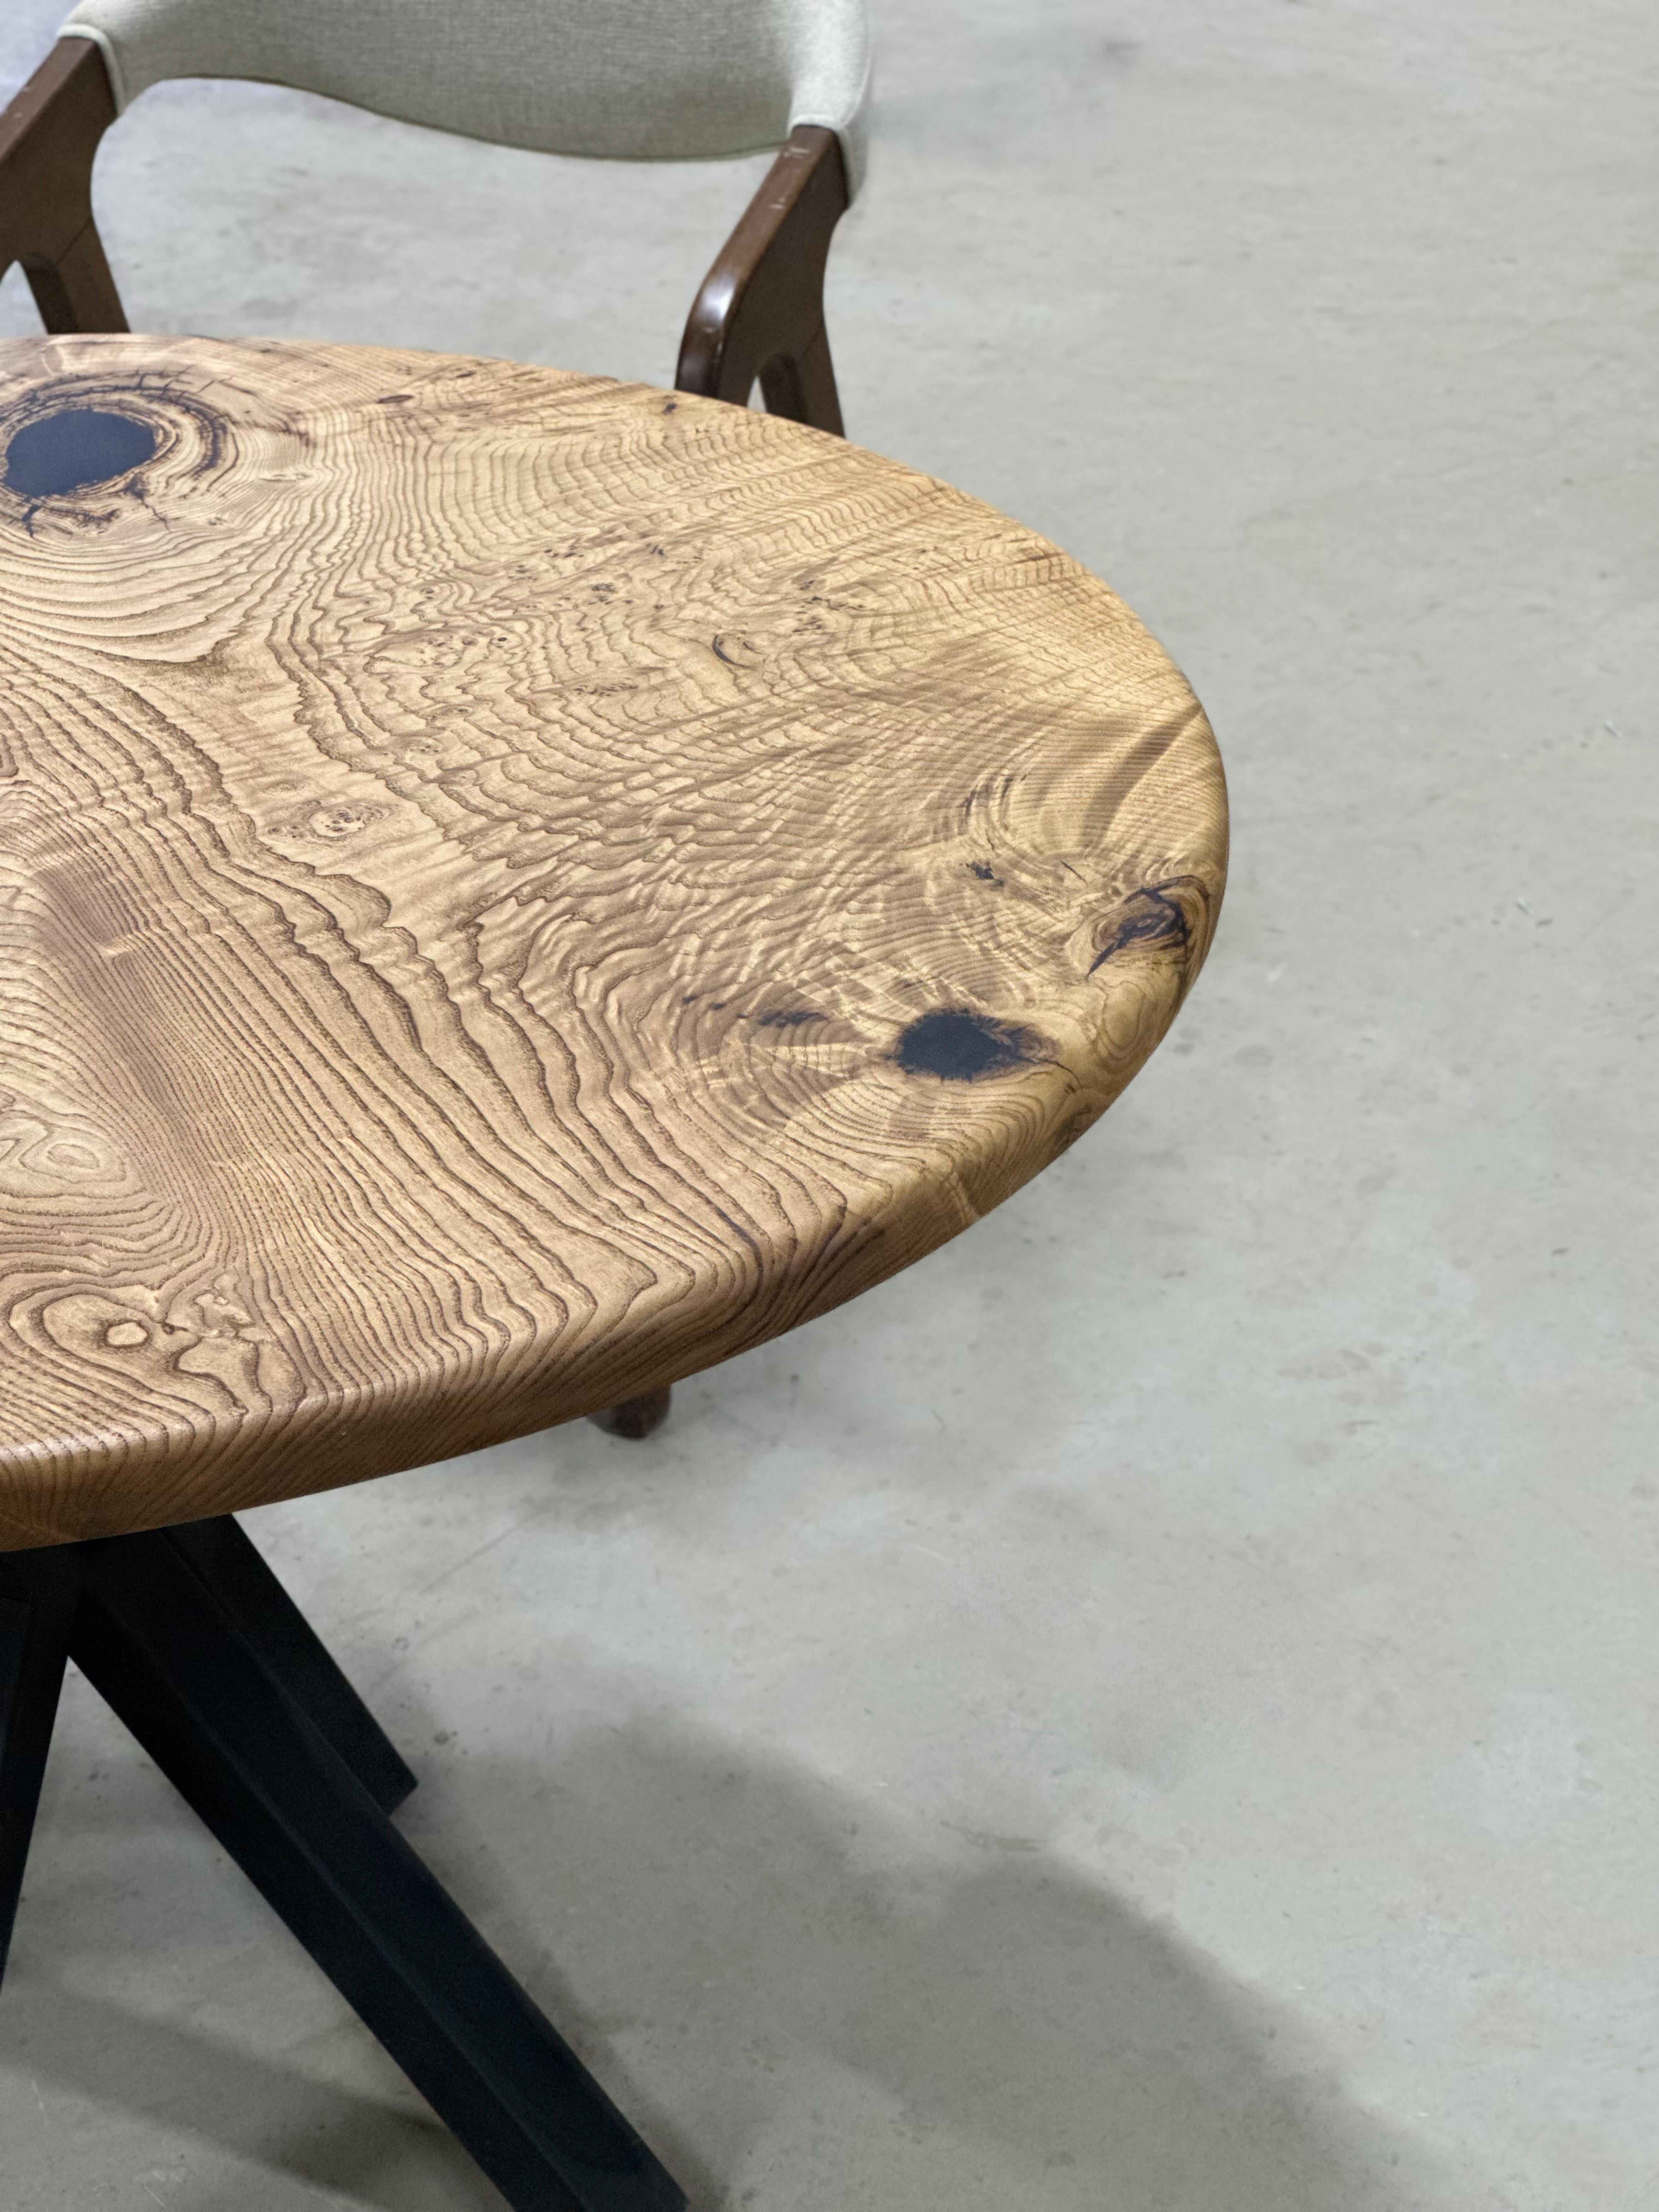 Table à manger ronde en châtaignier 

Cette table est fabriquée en bois de châtaignier vieux de 500 ans. Les veines et la texture du bois décrivent l'aspect d'un bois de châtaignier naturel.
Elle peut être utilisée comme table de salle à manger ou